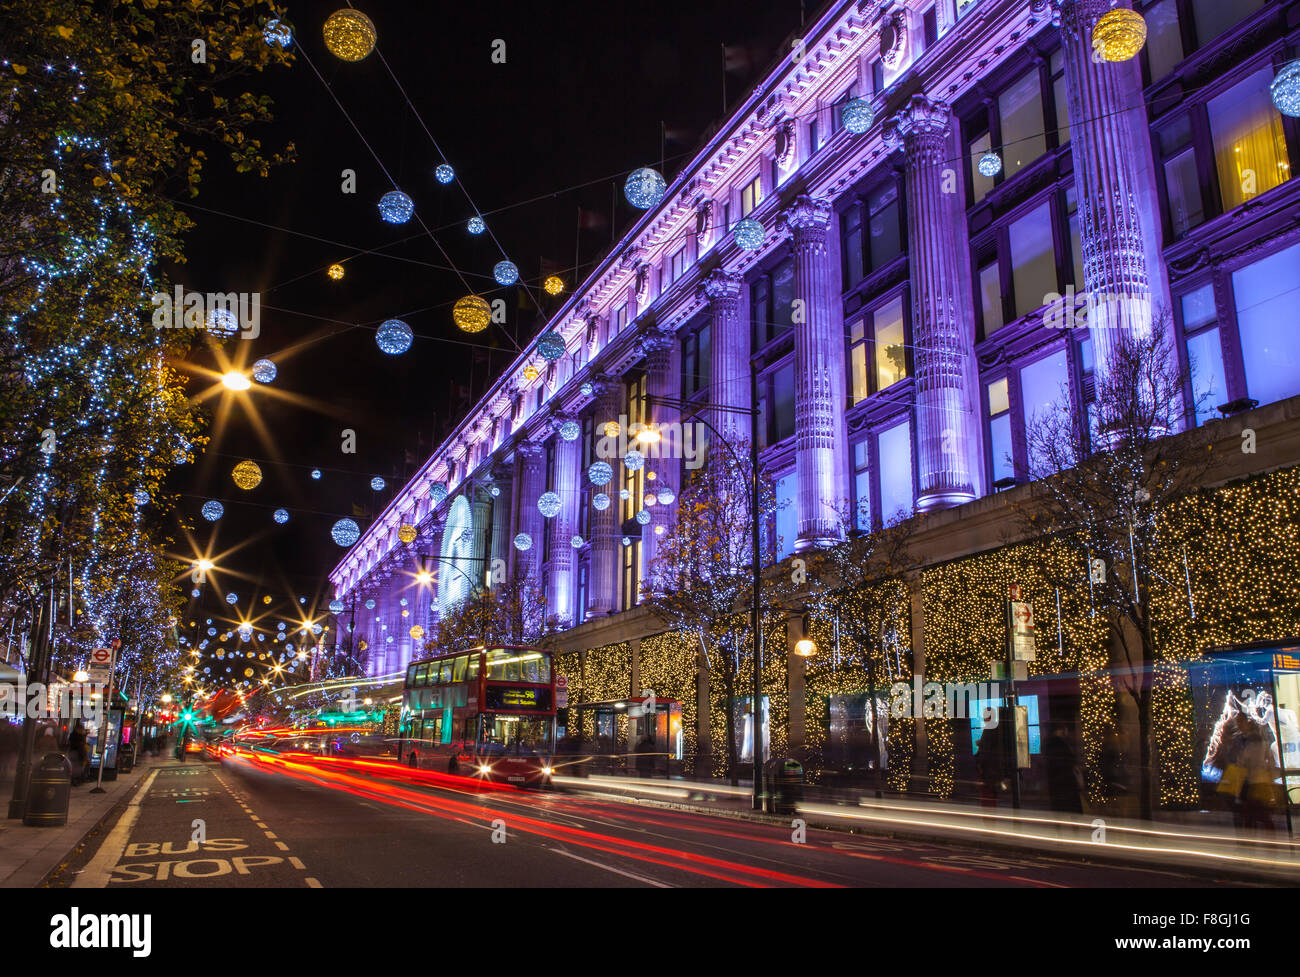 LONDON, UK - 9. Dezember 2015: Ein Blick auf das wunderschön beleuchtete Selfridge-Kaufhaus in der Weihnachtszeit auf Oxford Stre Stockfoto